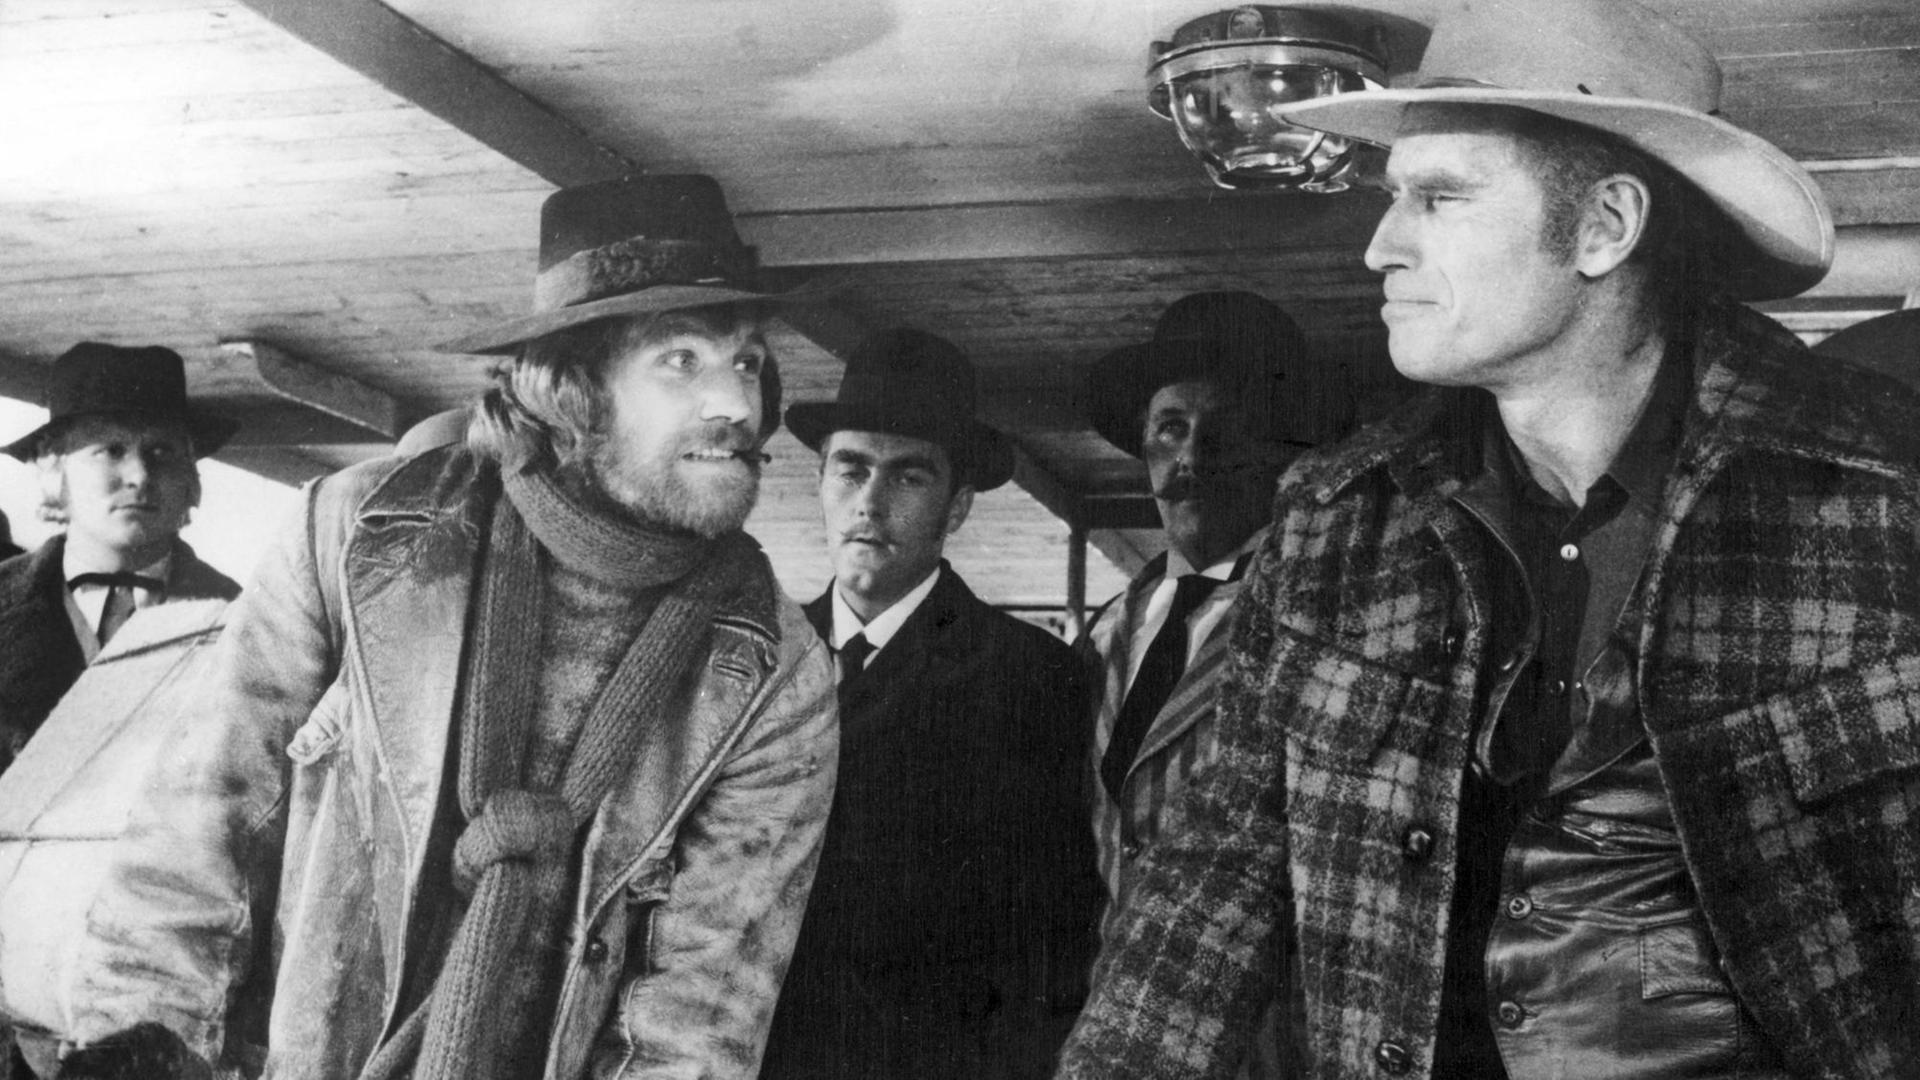 Der deutsche Schauspieler Raimund Harmstorf (l) als Pete und sein amerikanischer Kollege Charlton Heston (r) als John in dem Abenteuerfilm "Ruf der Wildnis" aus der Goldgräberzeit in Alaska nach einem Buch von Jack London. Aufnahme von 1972.